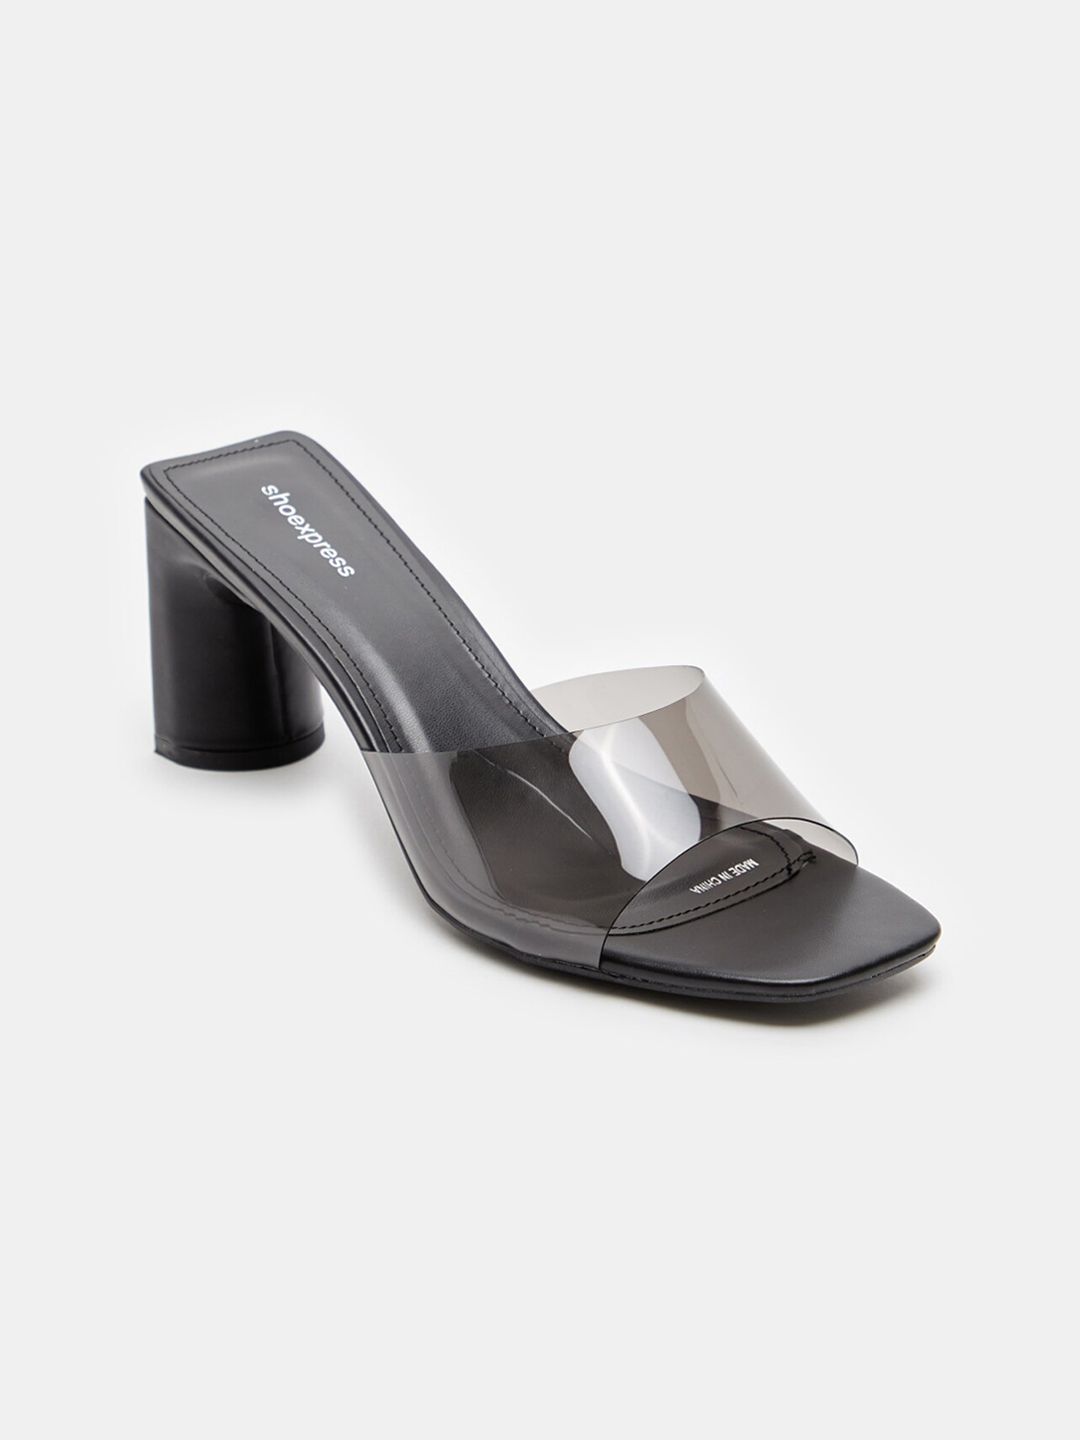 shoexpress Women Black & Transparent Block Heel Sandal Price in India